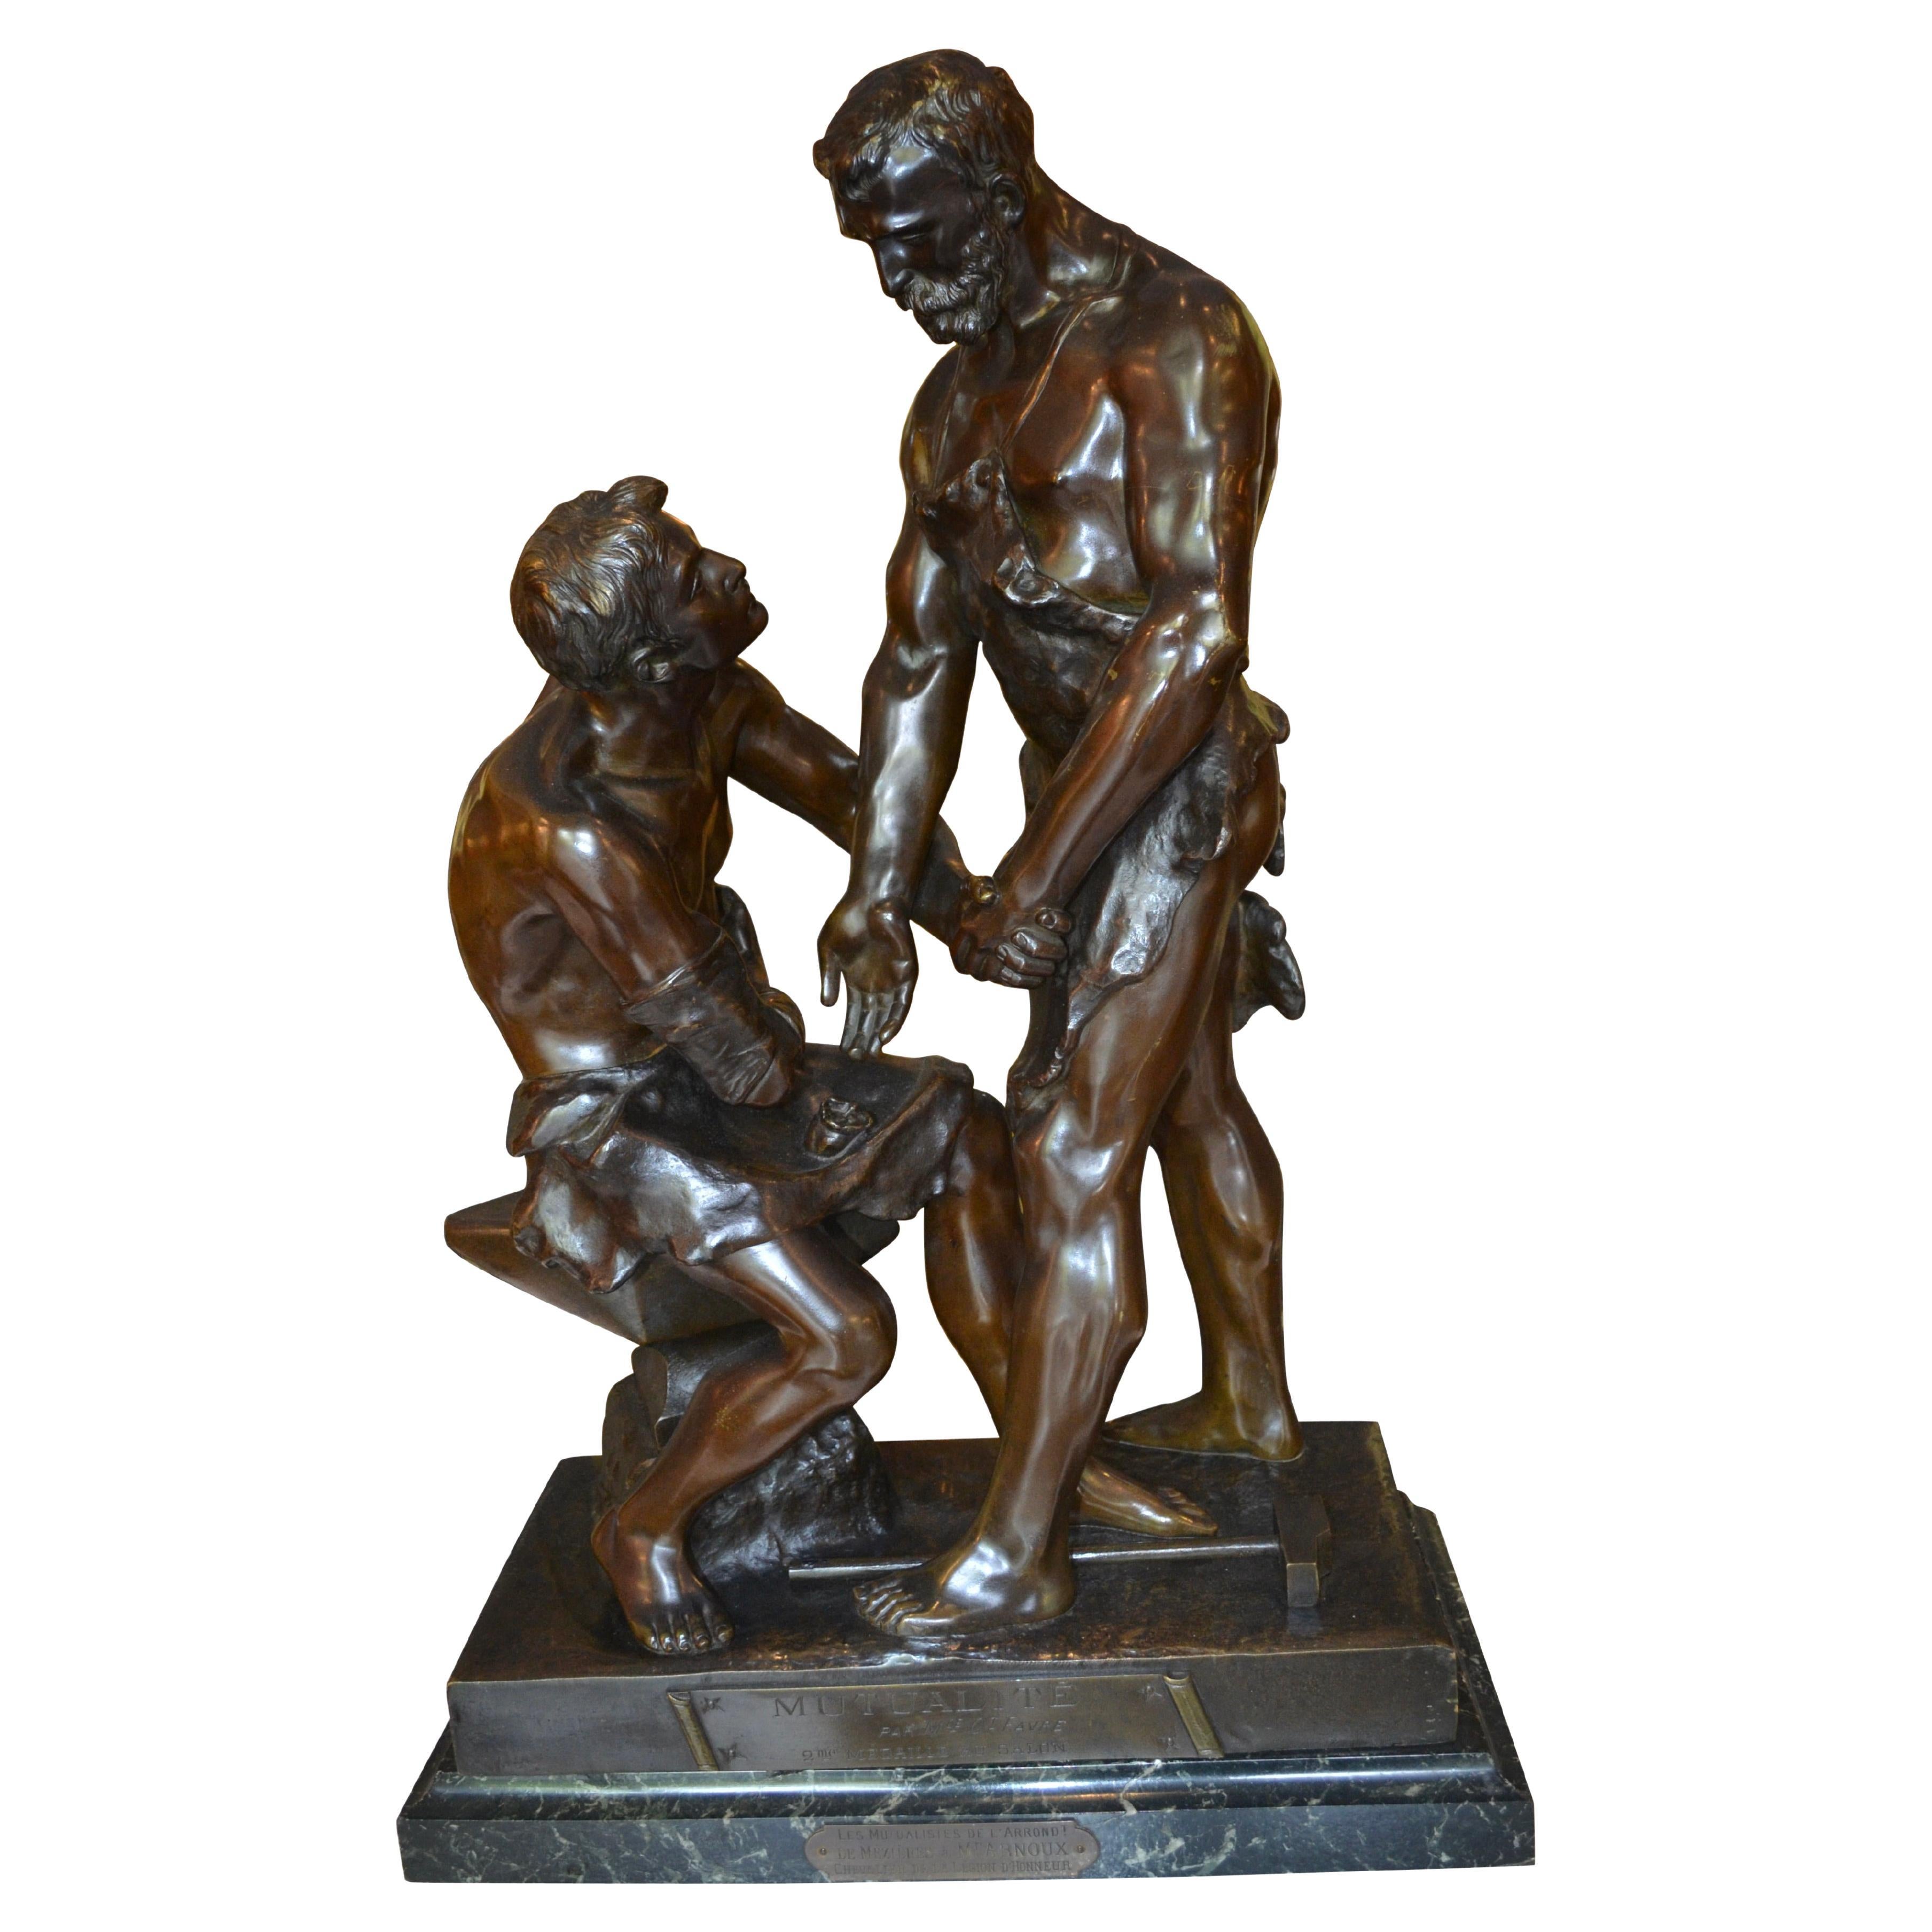 Seltene Bronzestatue aus dem 19. Jahrhundert mit dem Titel „Mutualit“ von Maurice Constant Favre